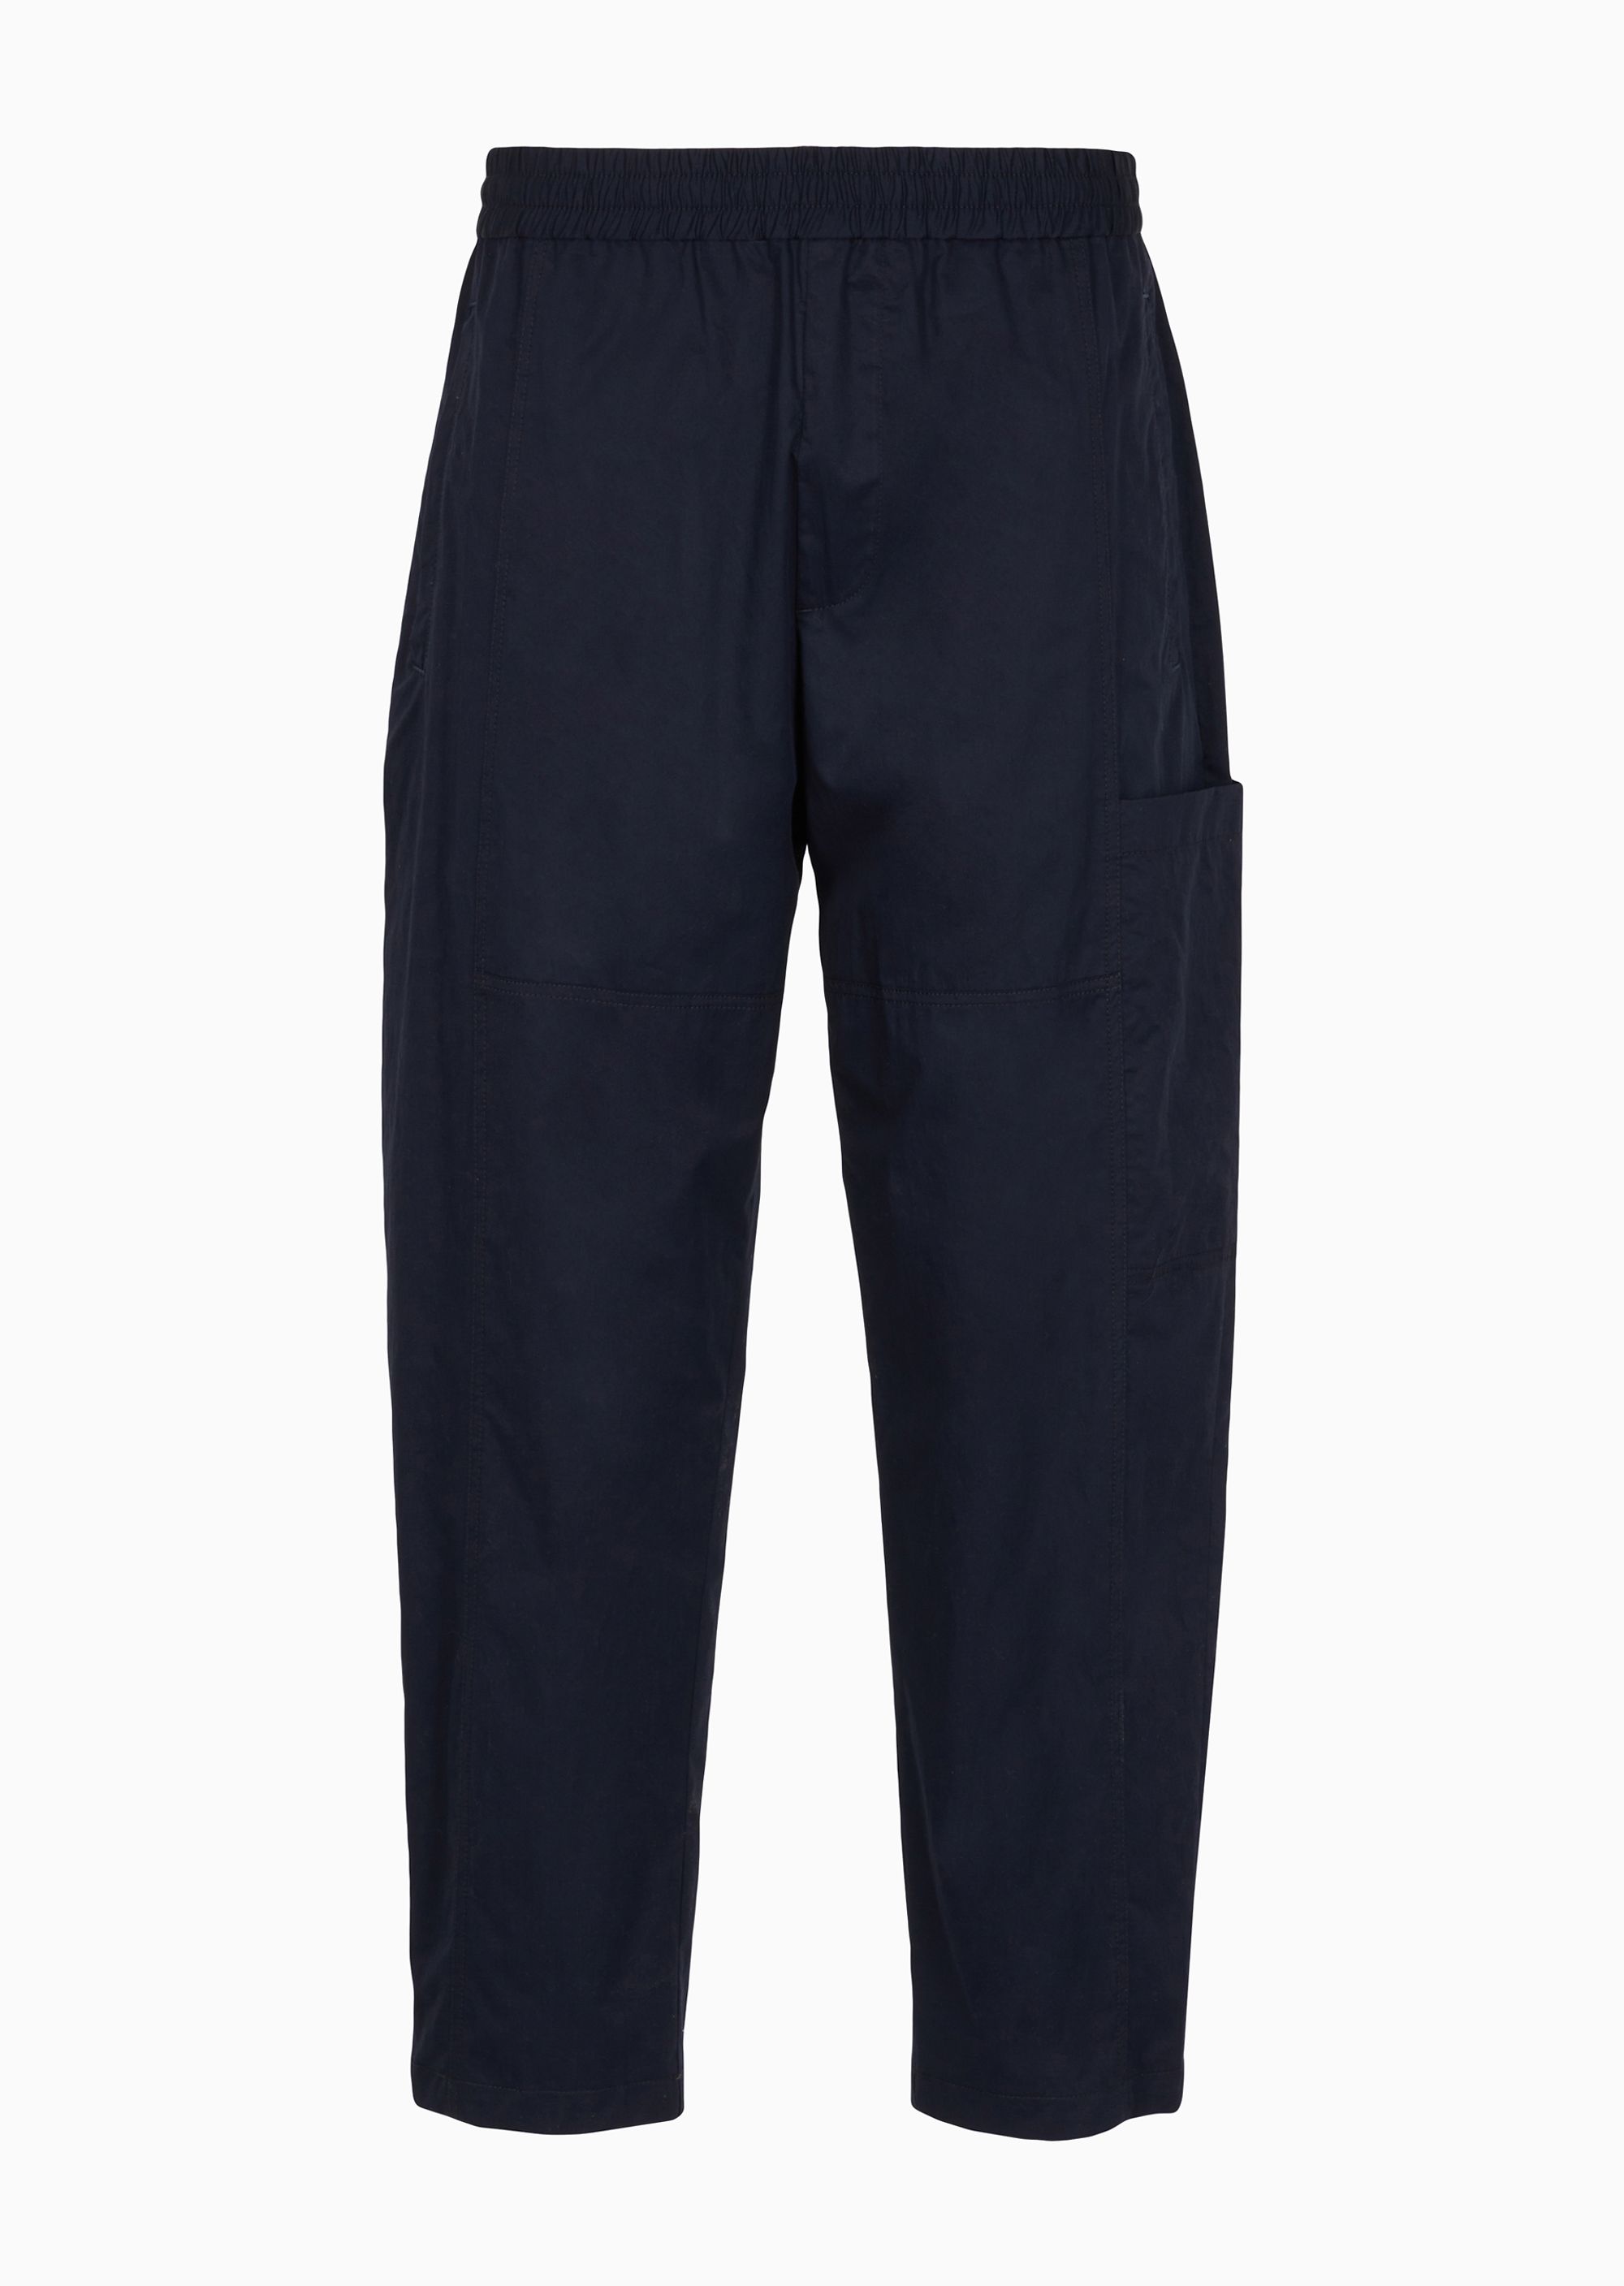 Брюки Armani Exchange Casual, темно-синий джинсы прямого кроя с высокой талией и множеством карманов средняя стирка